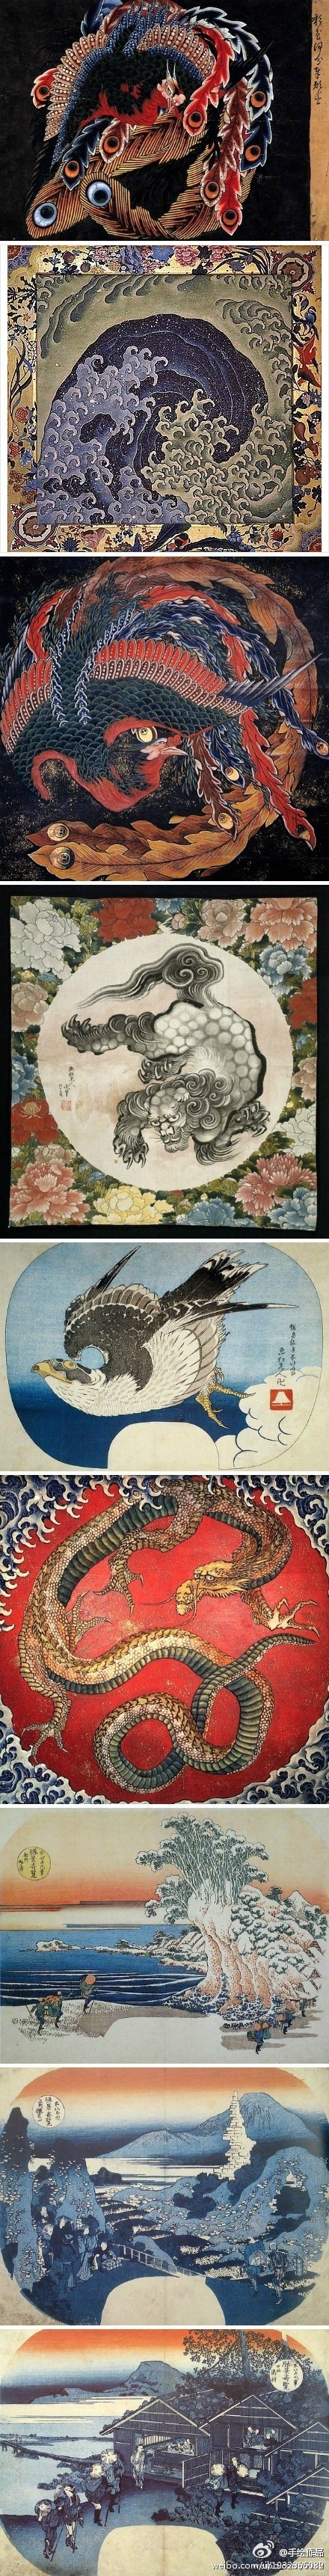 日本江户时代的浮世绘画家葛饰北斋的作品,创作这些画时他已八十余岁.